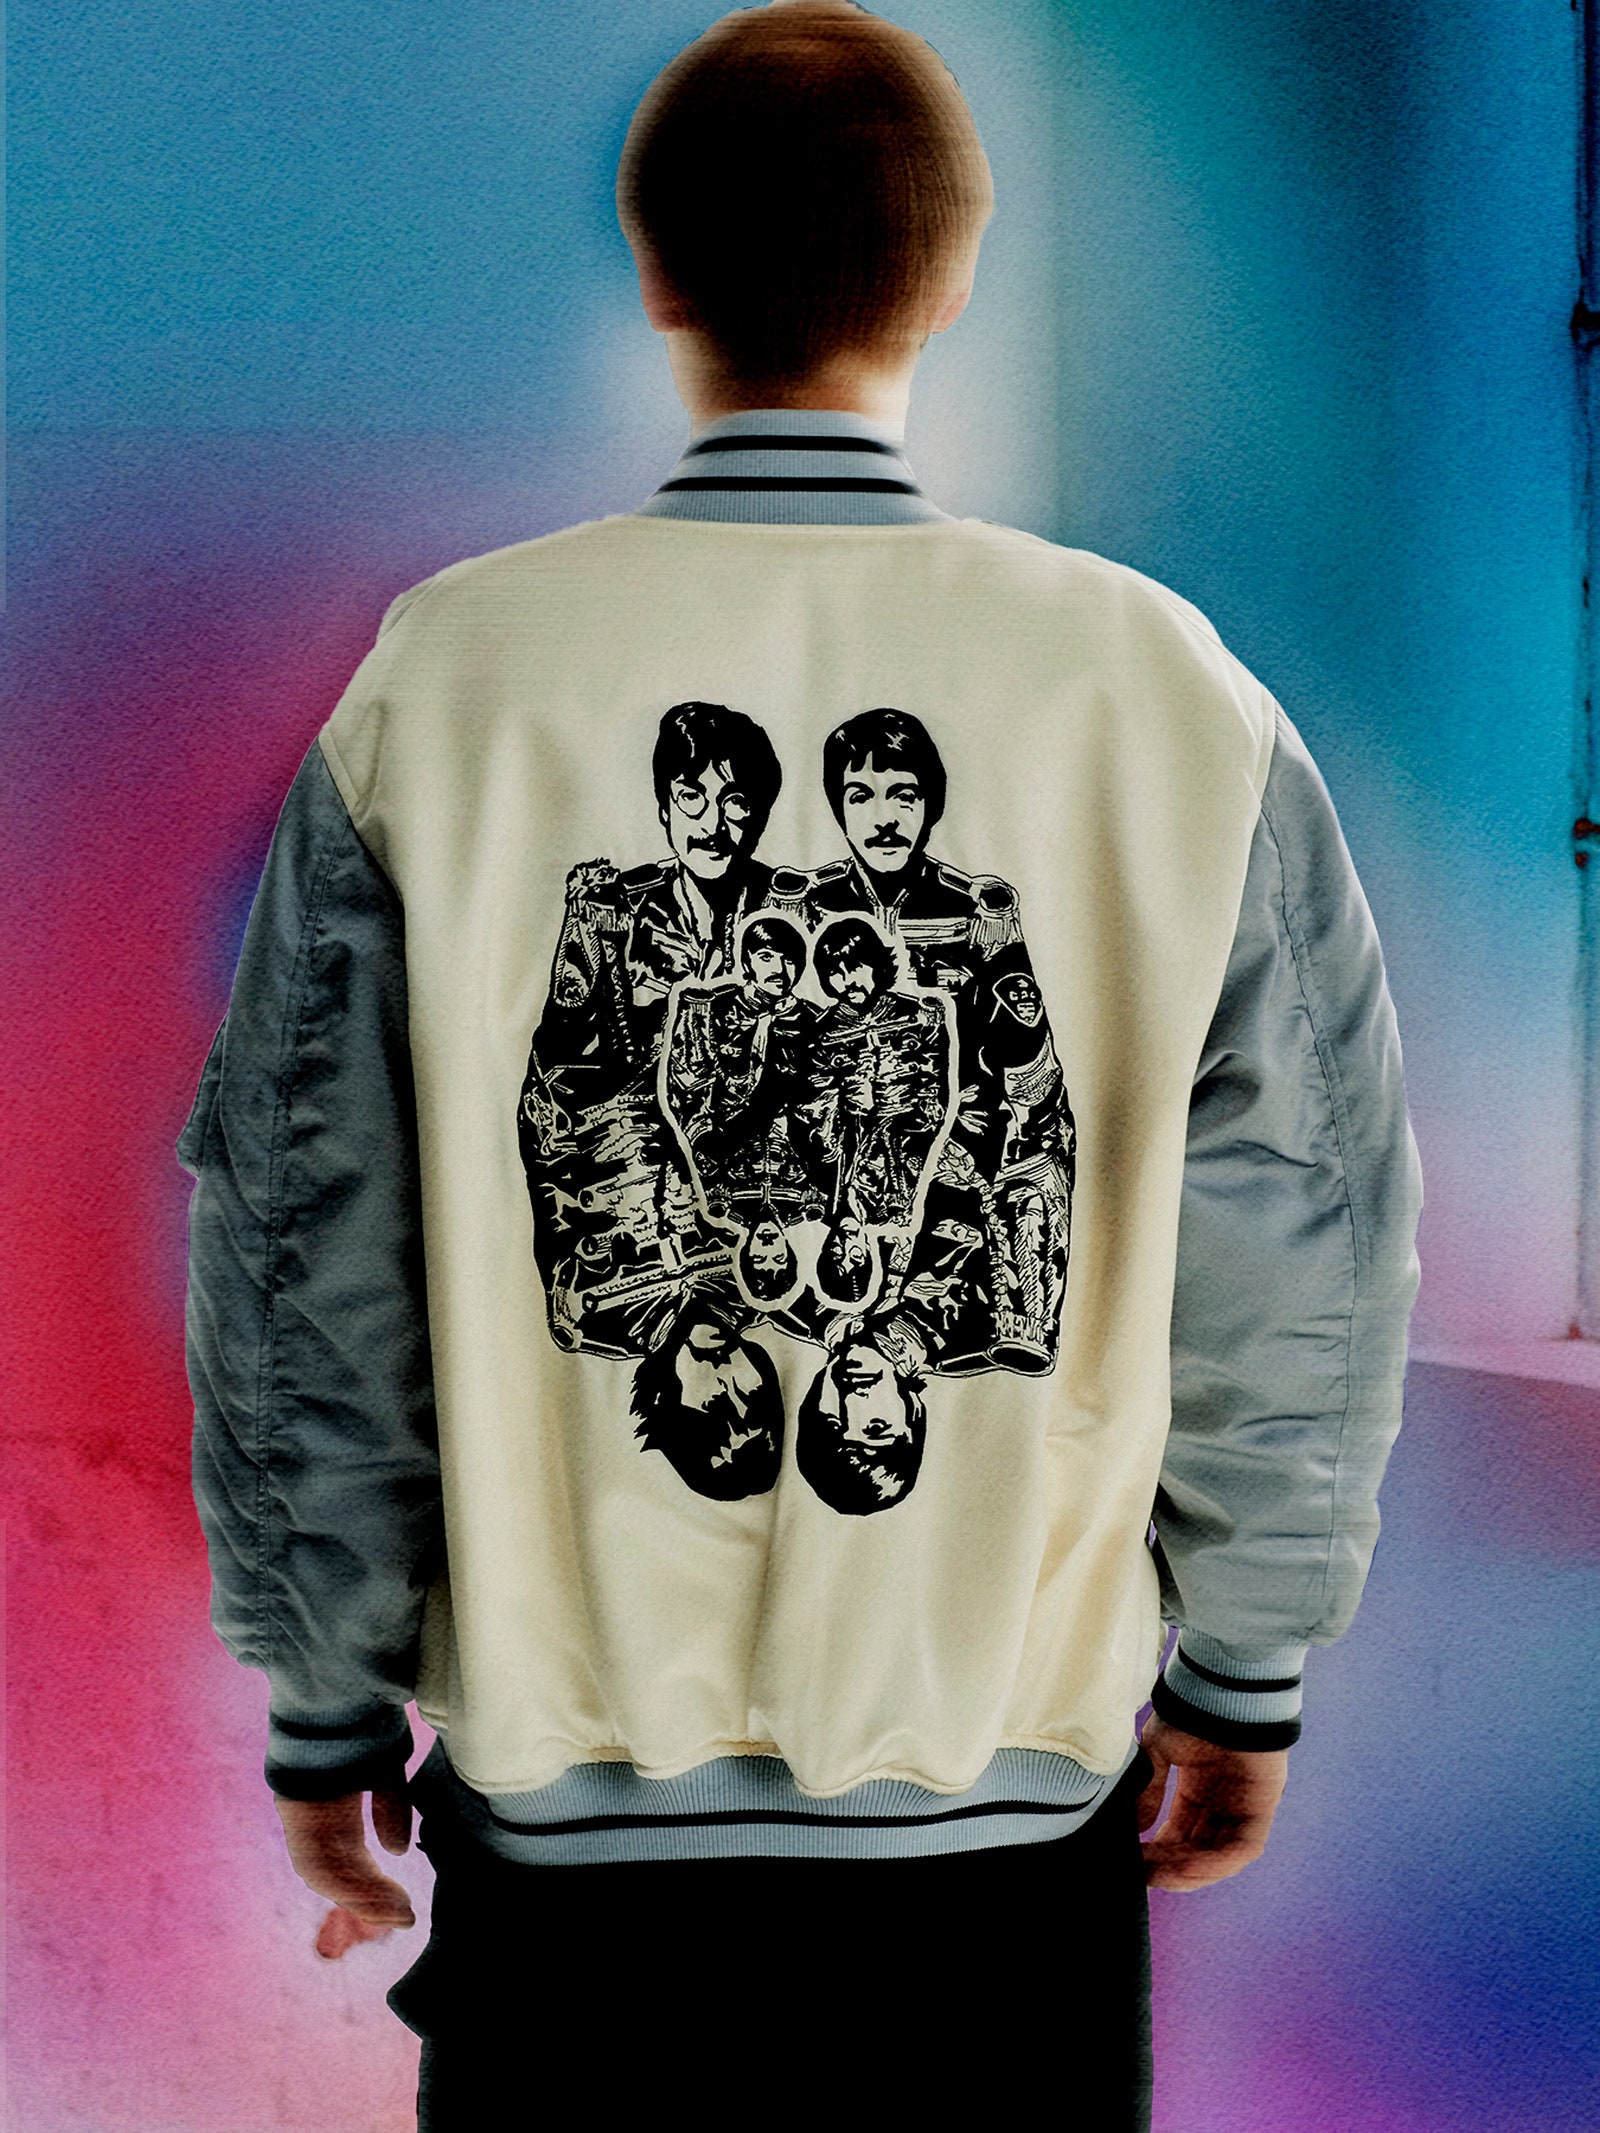 Стелла Маккартни представила новую коллекцию, вдохновленную The Beatles (фото 9)